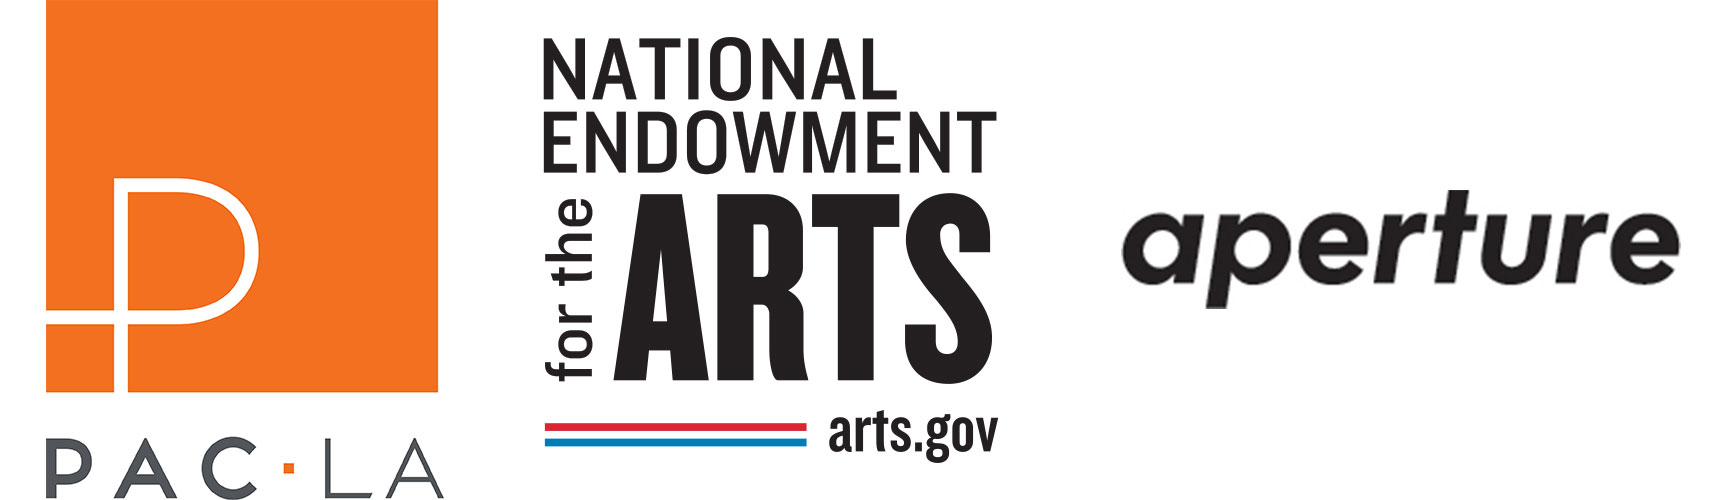 PAC LA; National Endowment for the Arts; Aperture. 